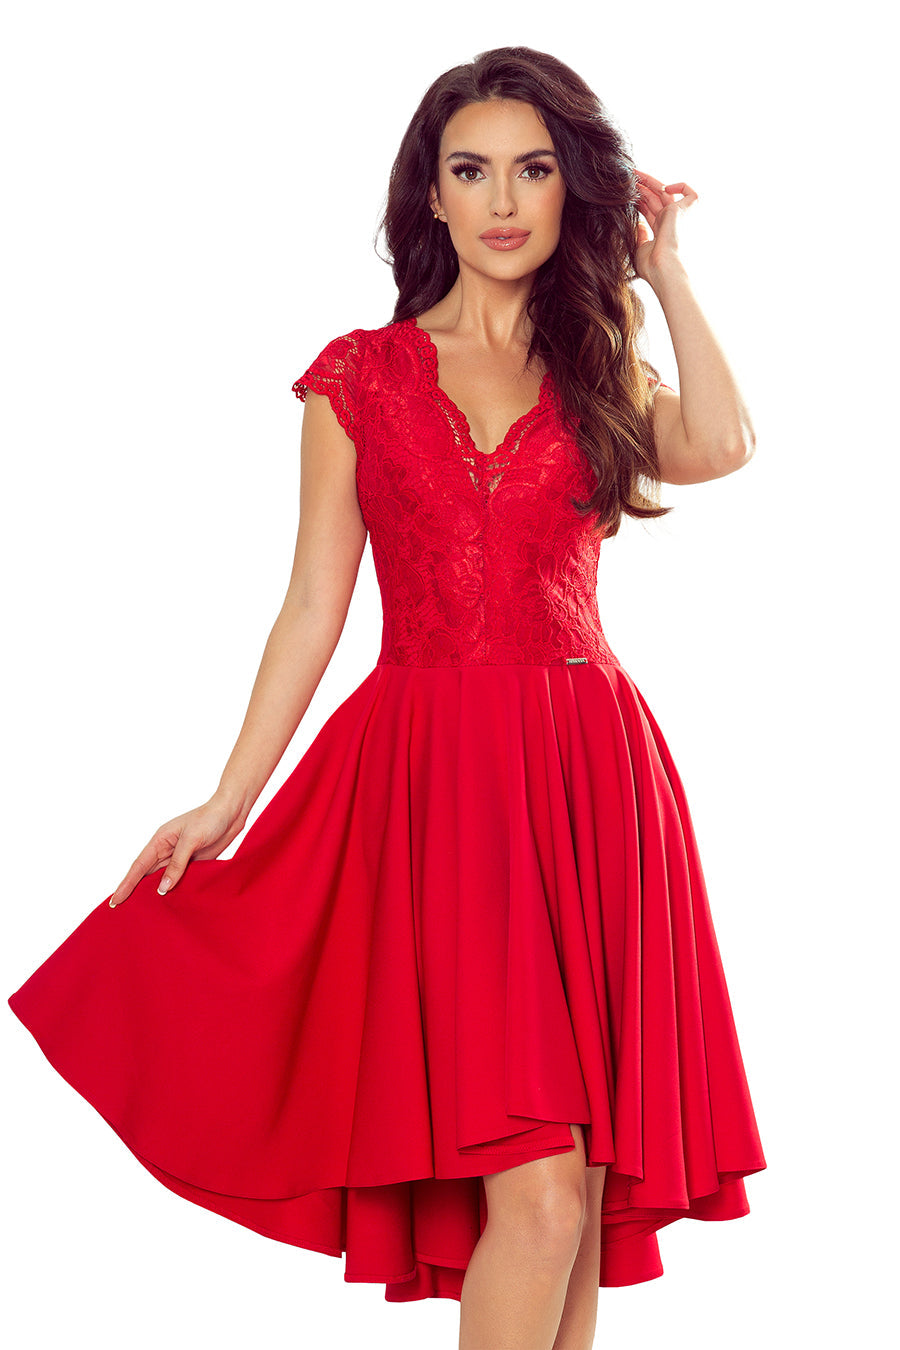 Γυναικείο φόρεμα Kazumi, Κόκκινο 2